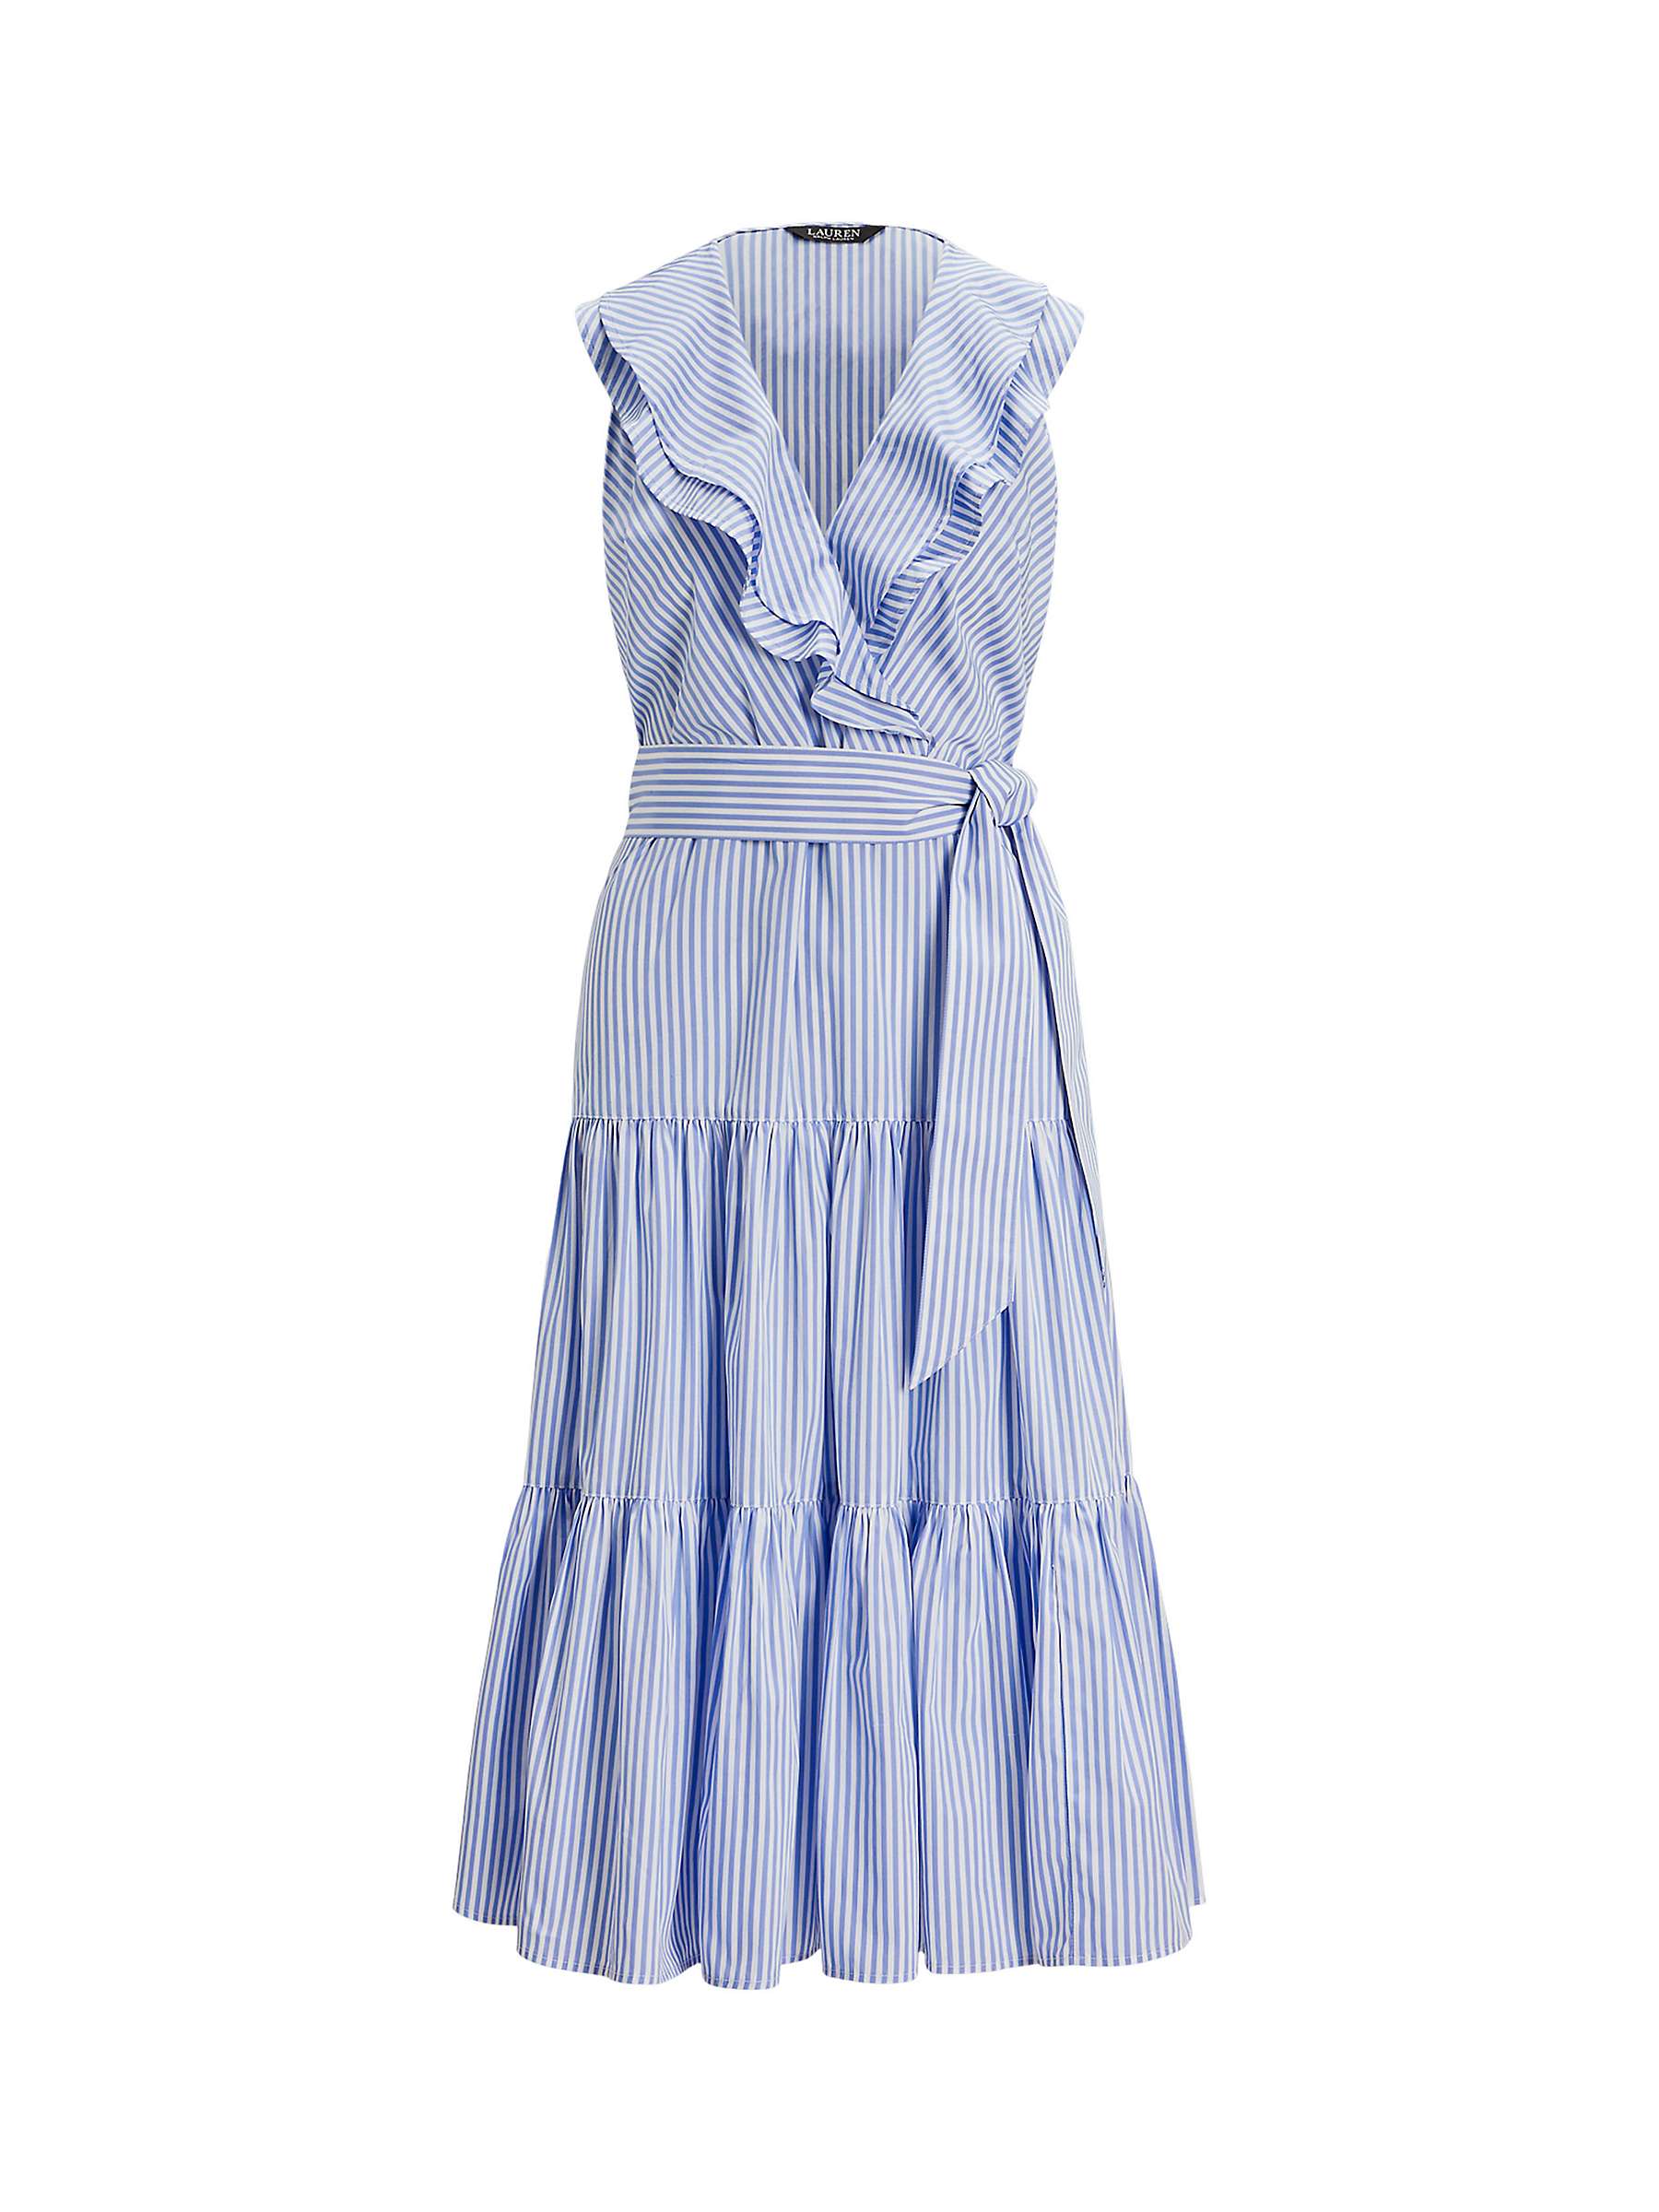 Buy Lauren Ralph Lauren Tabraelin Stripe Dress, Blue Online at johnlewis.com